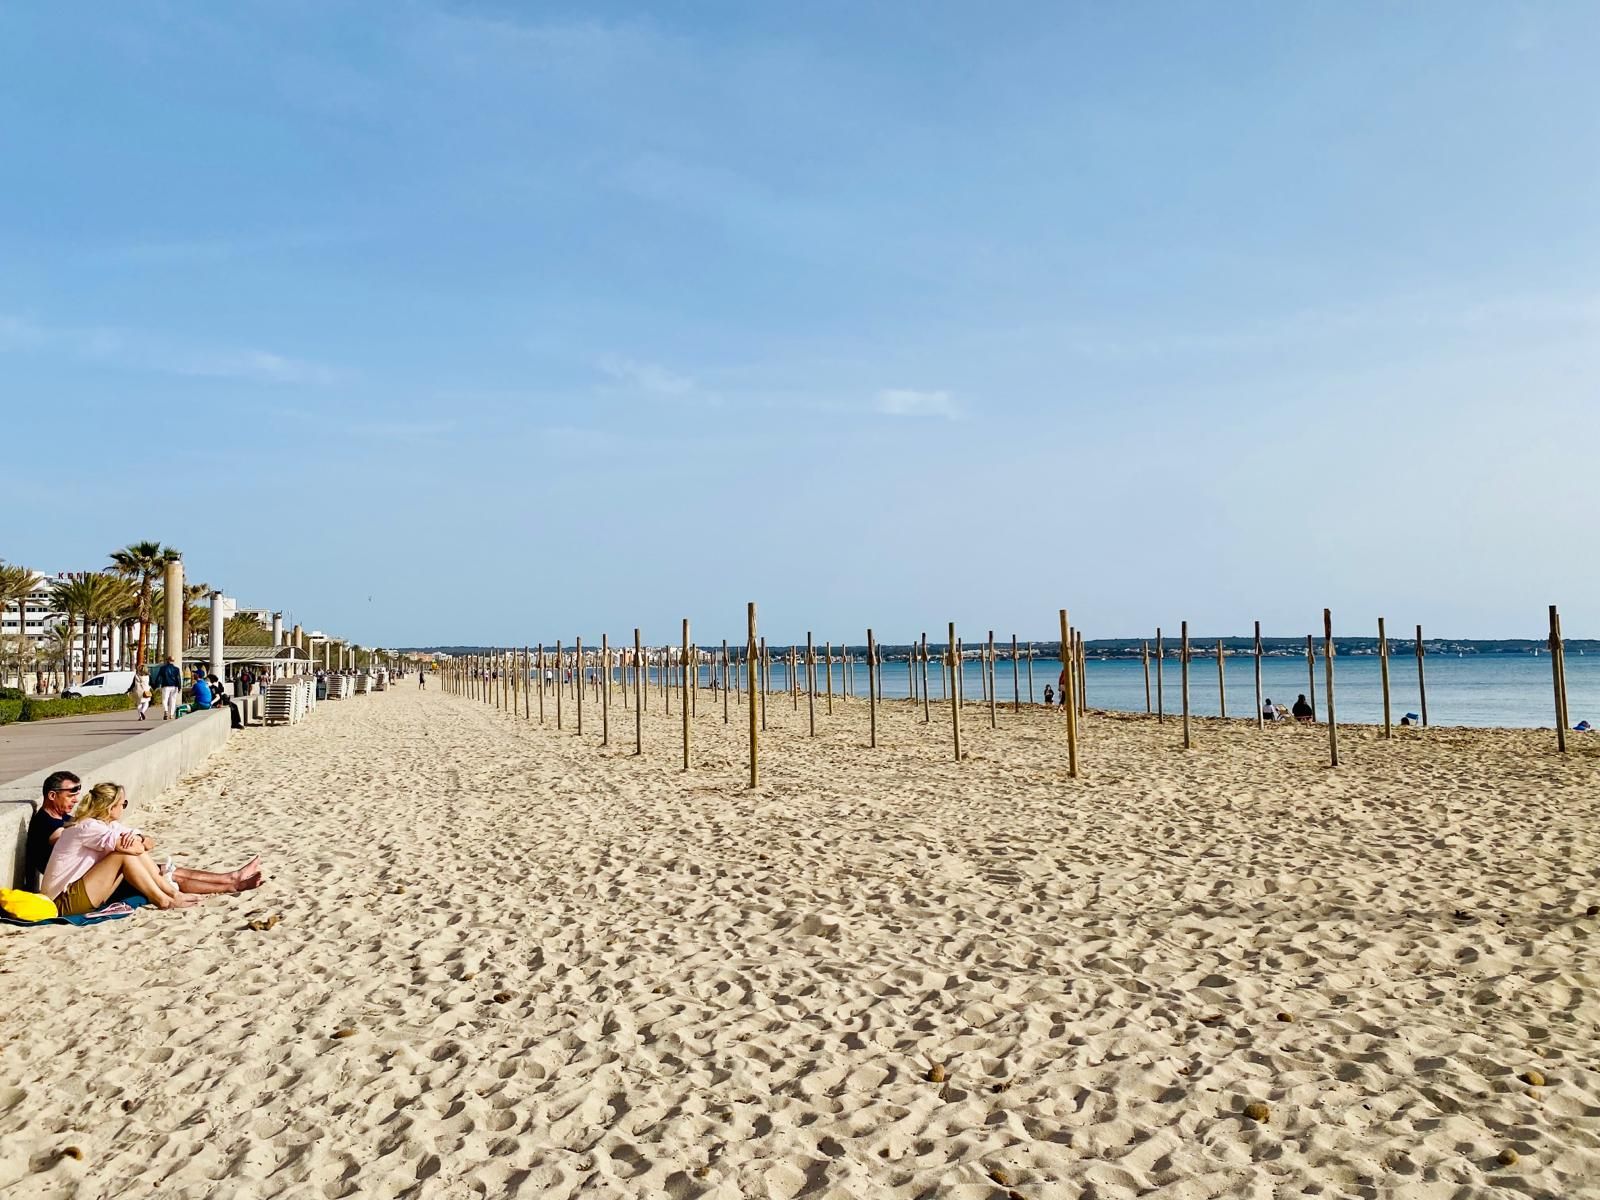 Bereit machen für die Mallorca-Urlauber – so sieht es gerade an der Playa de Palma aus